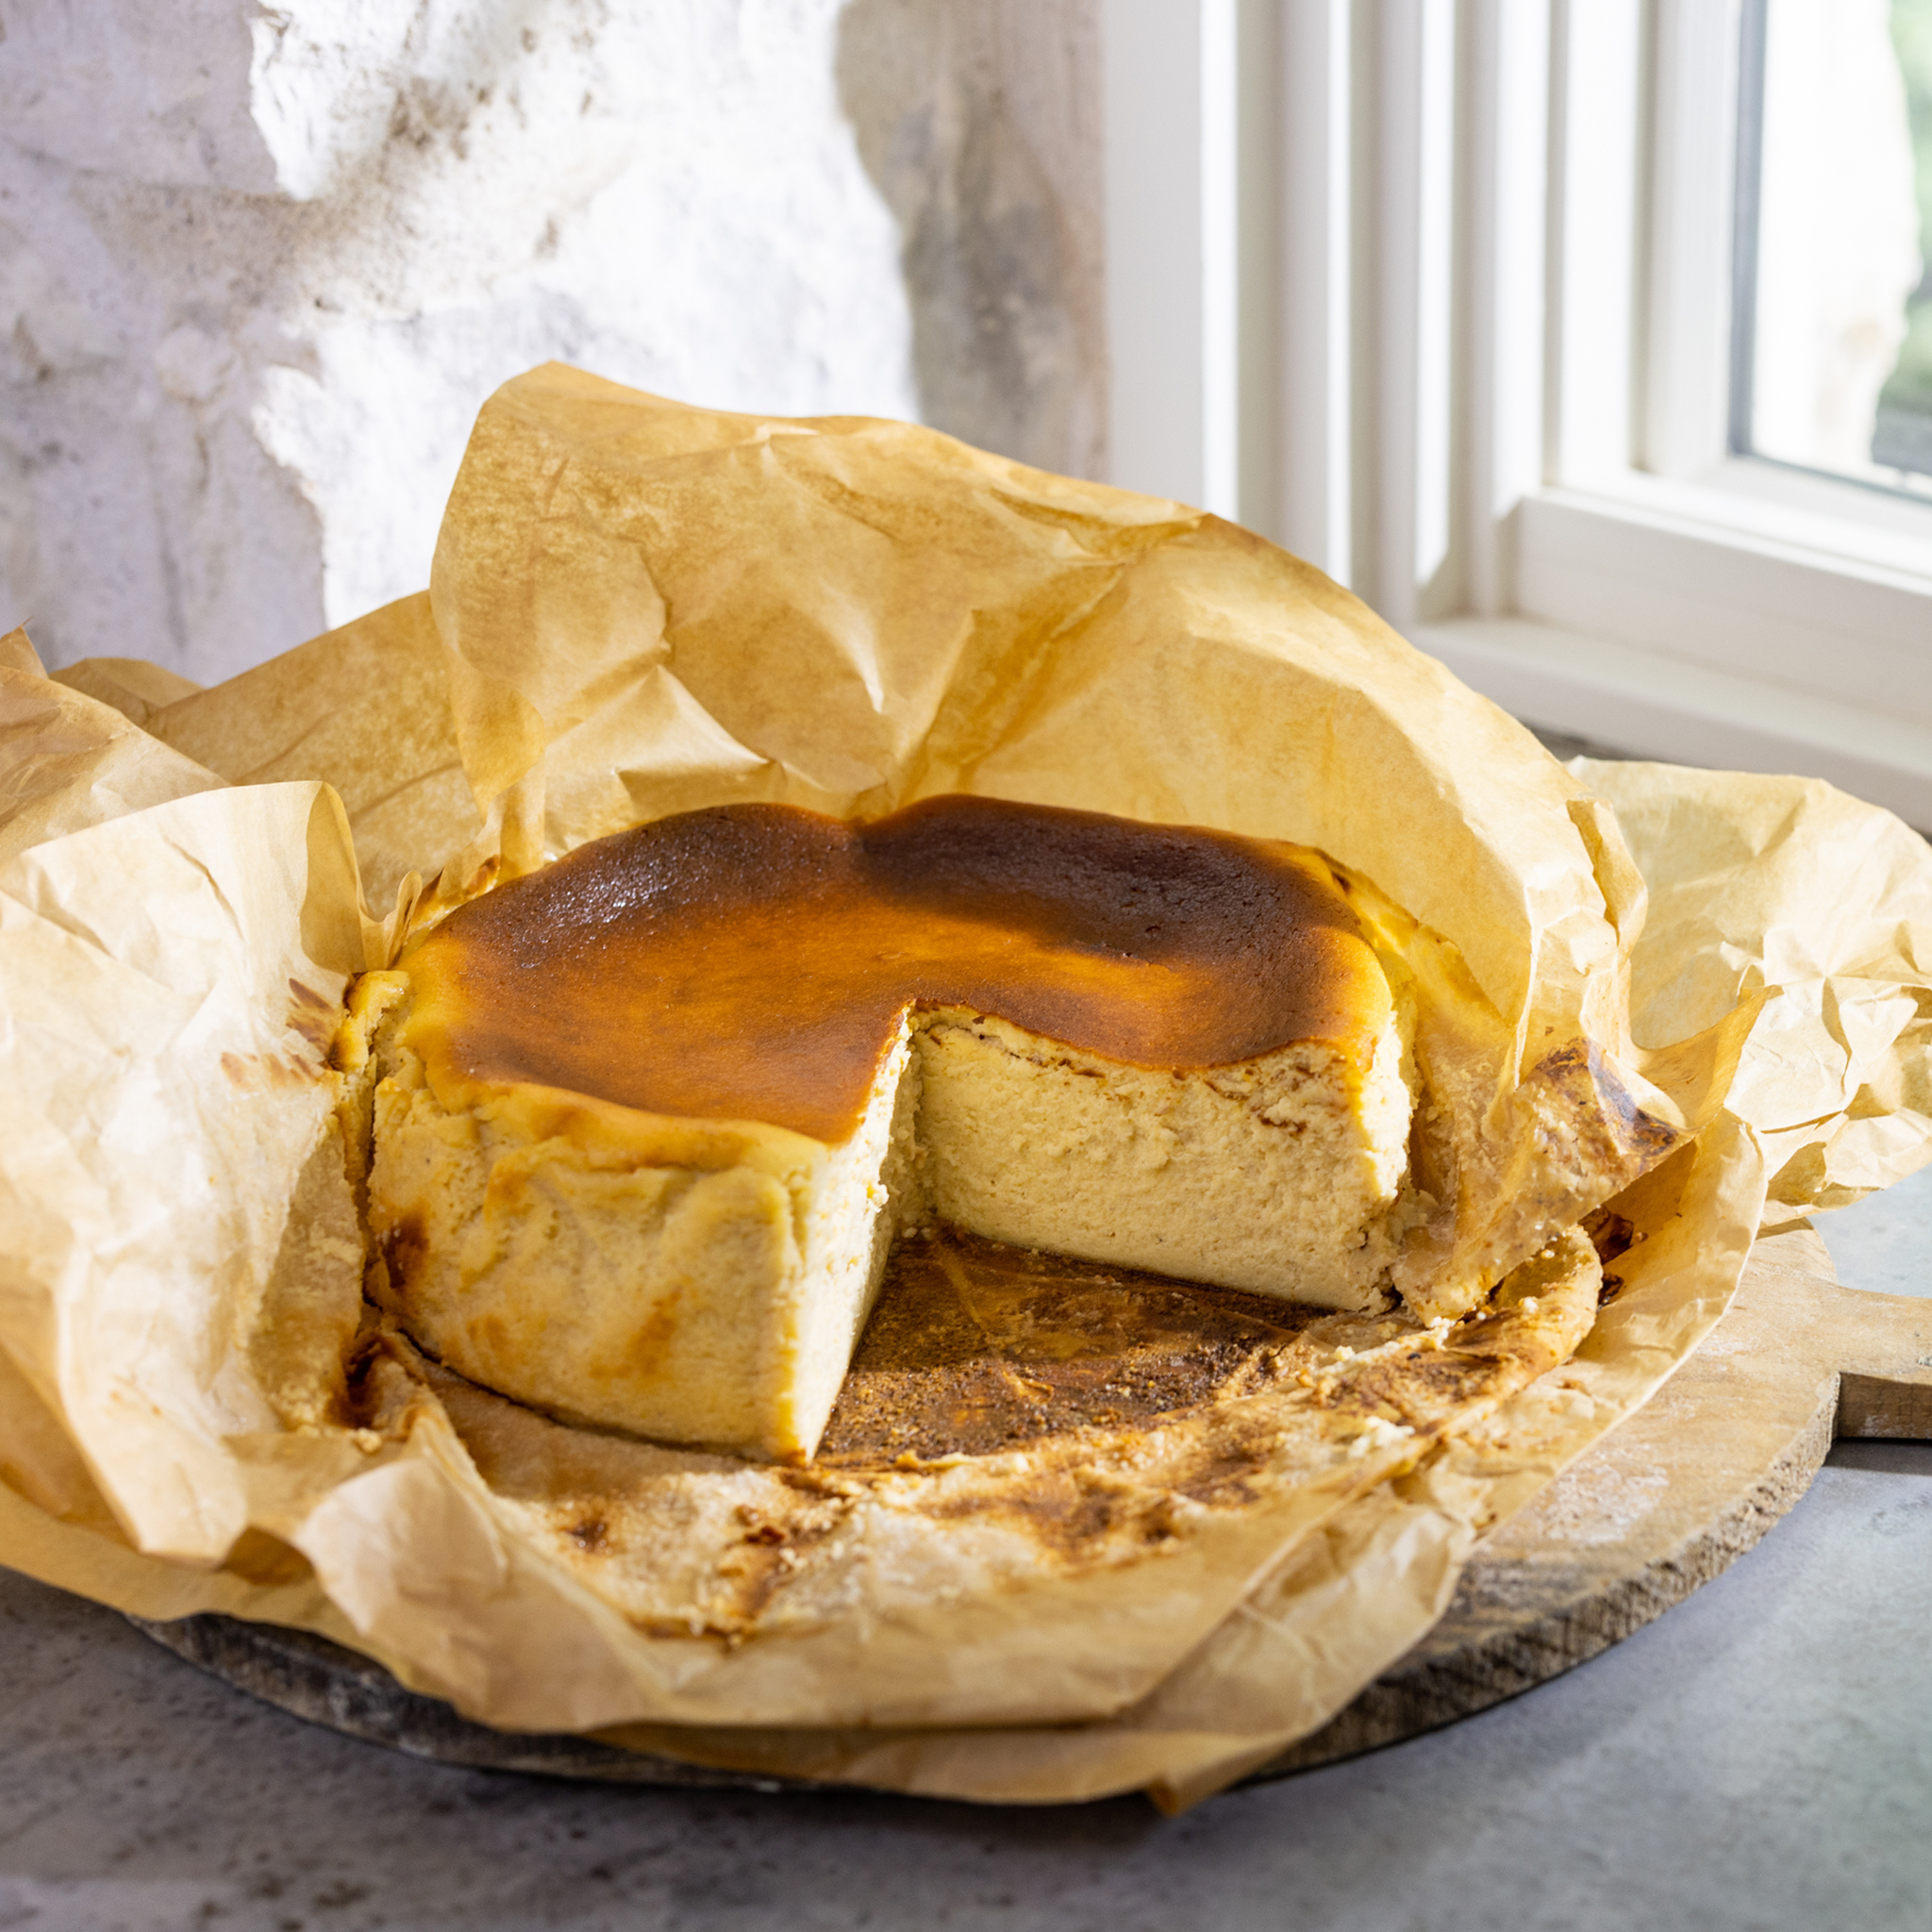 Joanna Gaines' Brandied Pumpkin Basque-Style Cheesecake